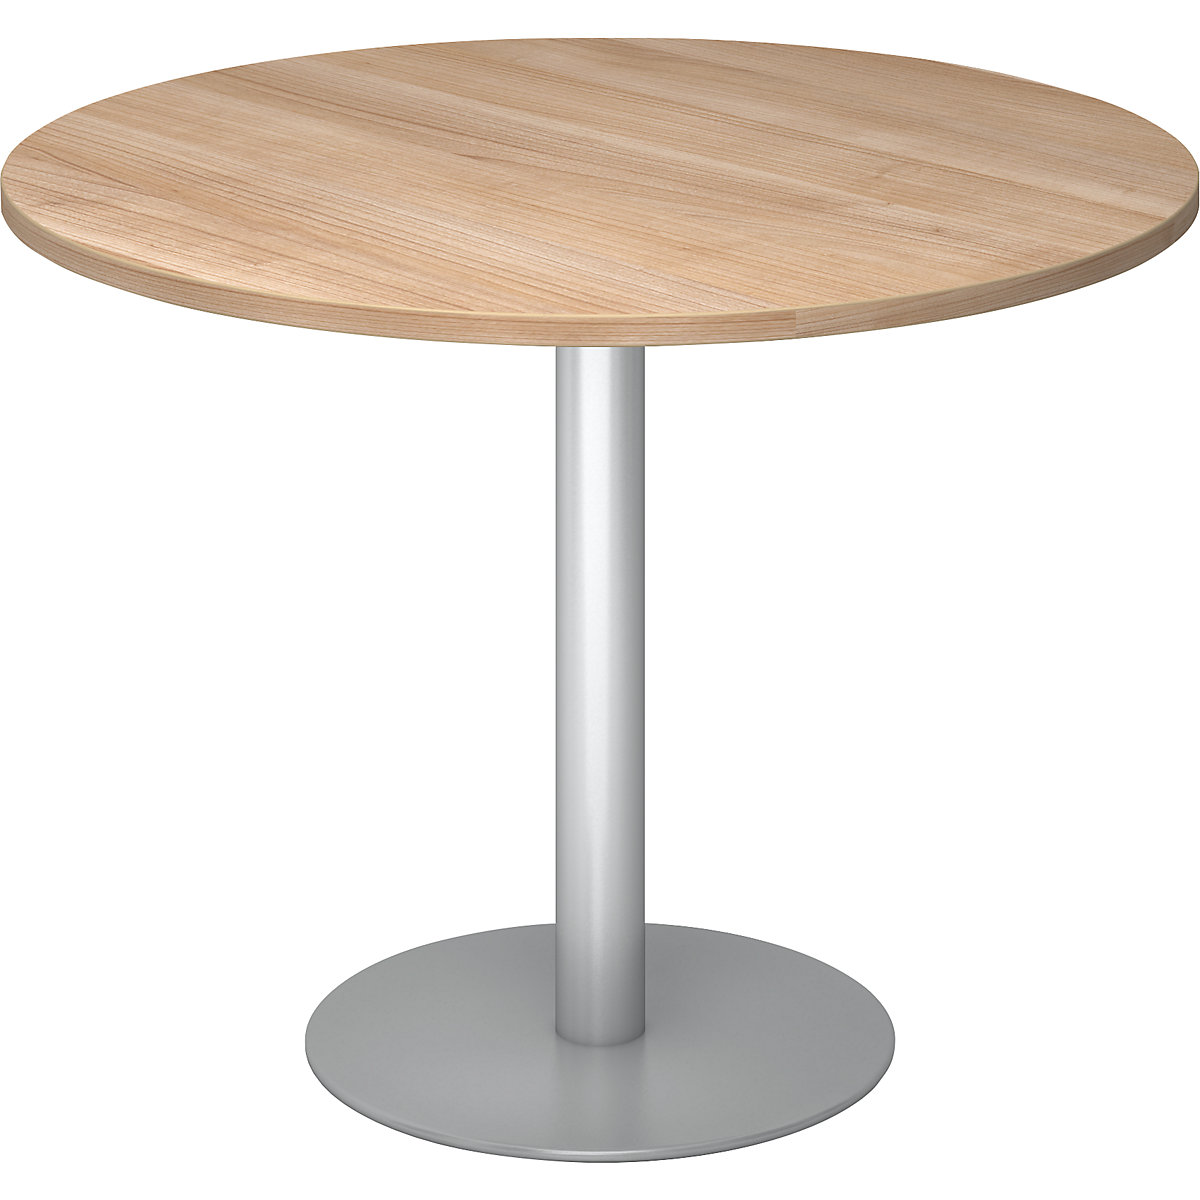 Jednací stůl, Ø 1000 mm, výška 755 mm, stříbrný podstavec, deska ořechový dekor